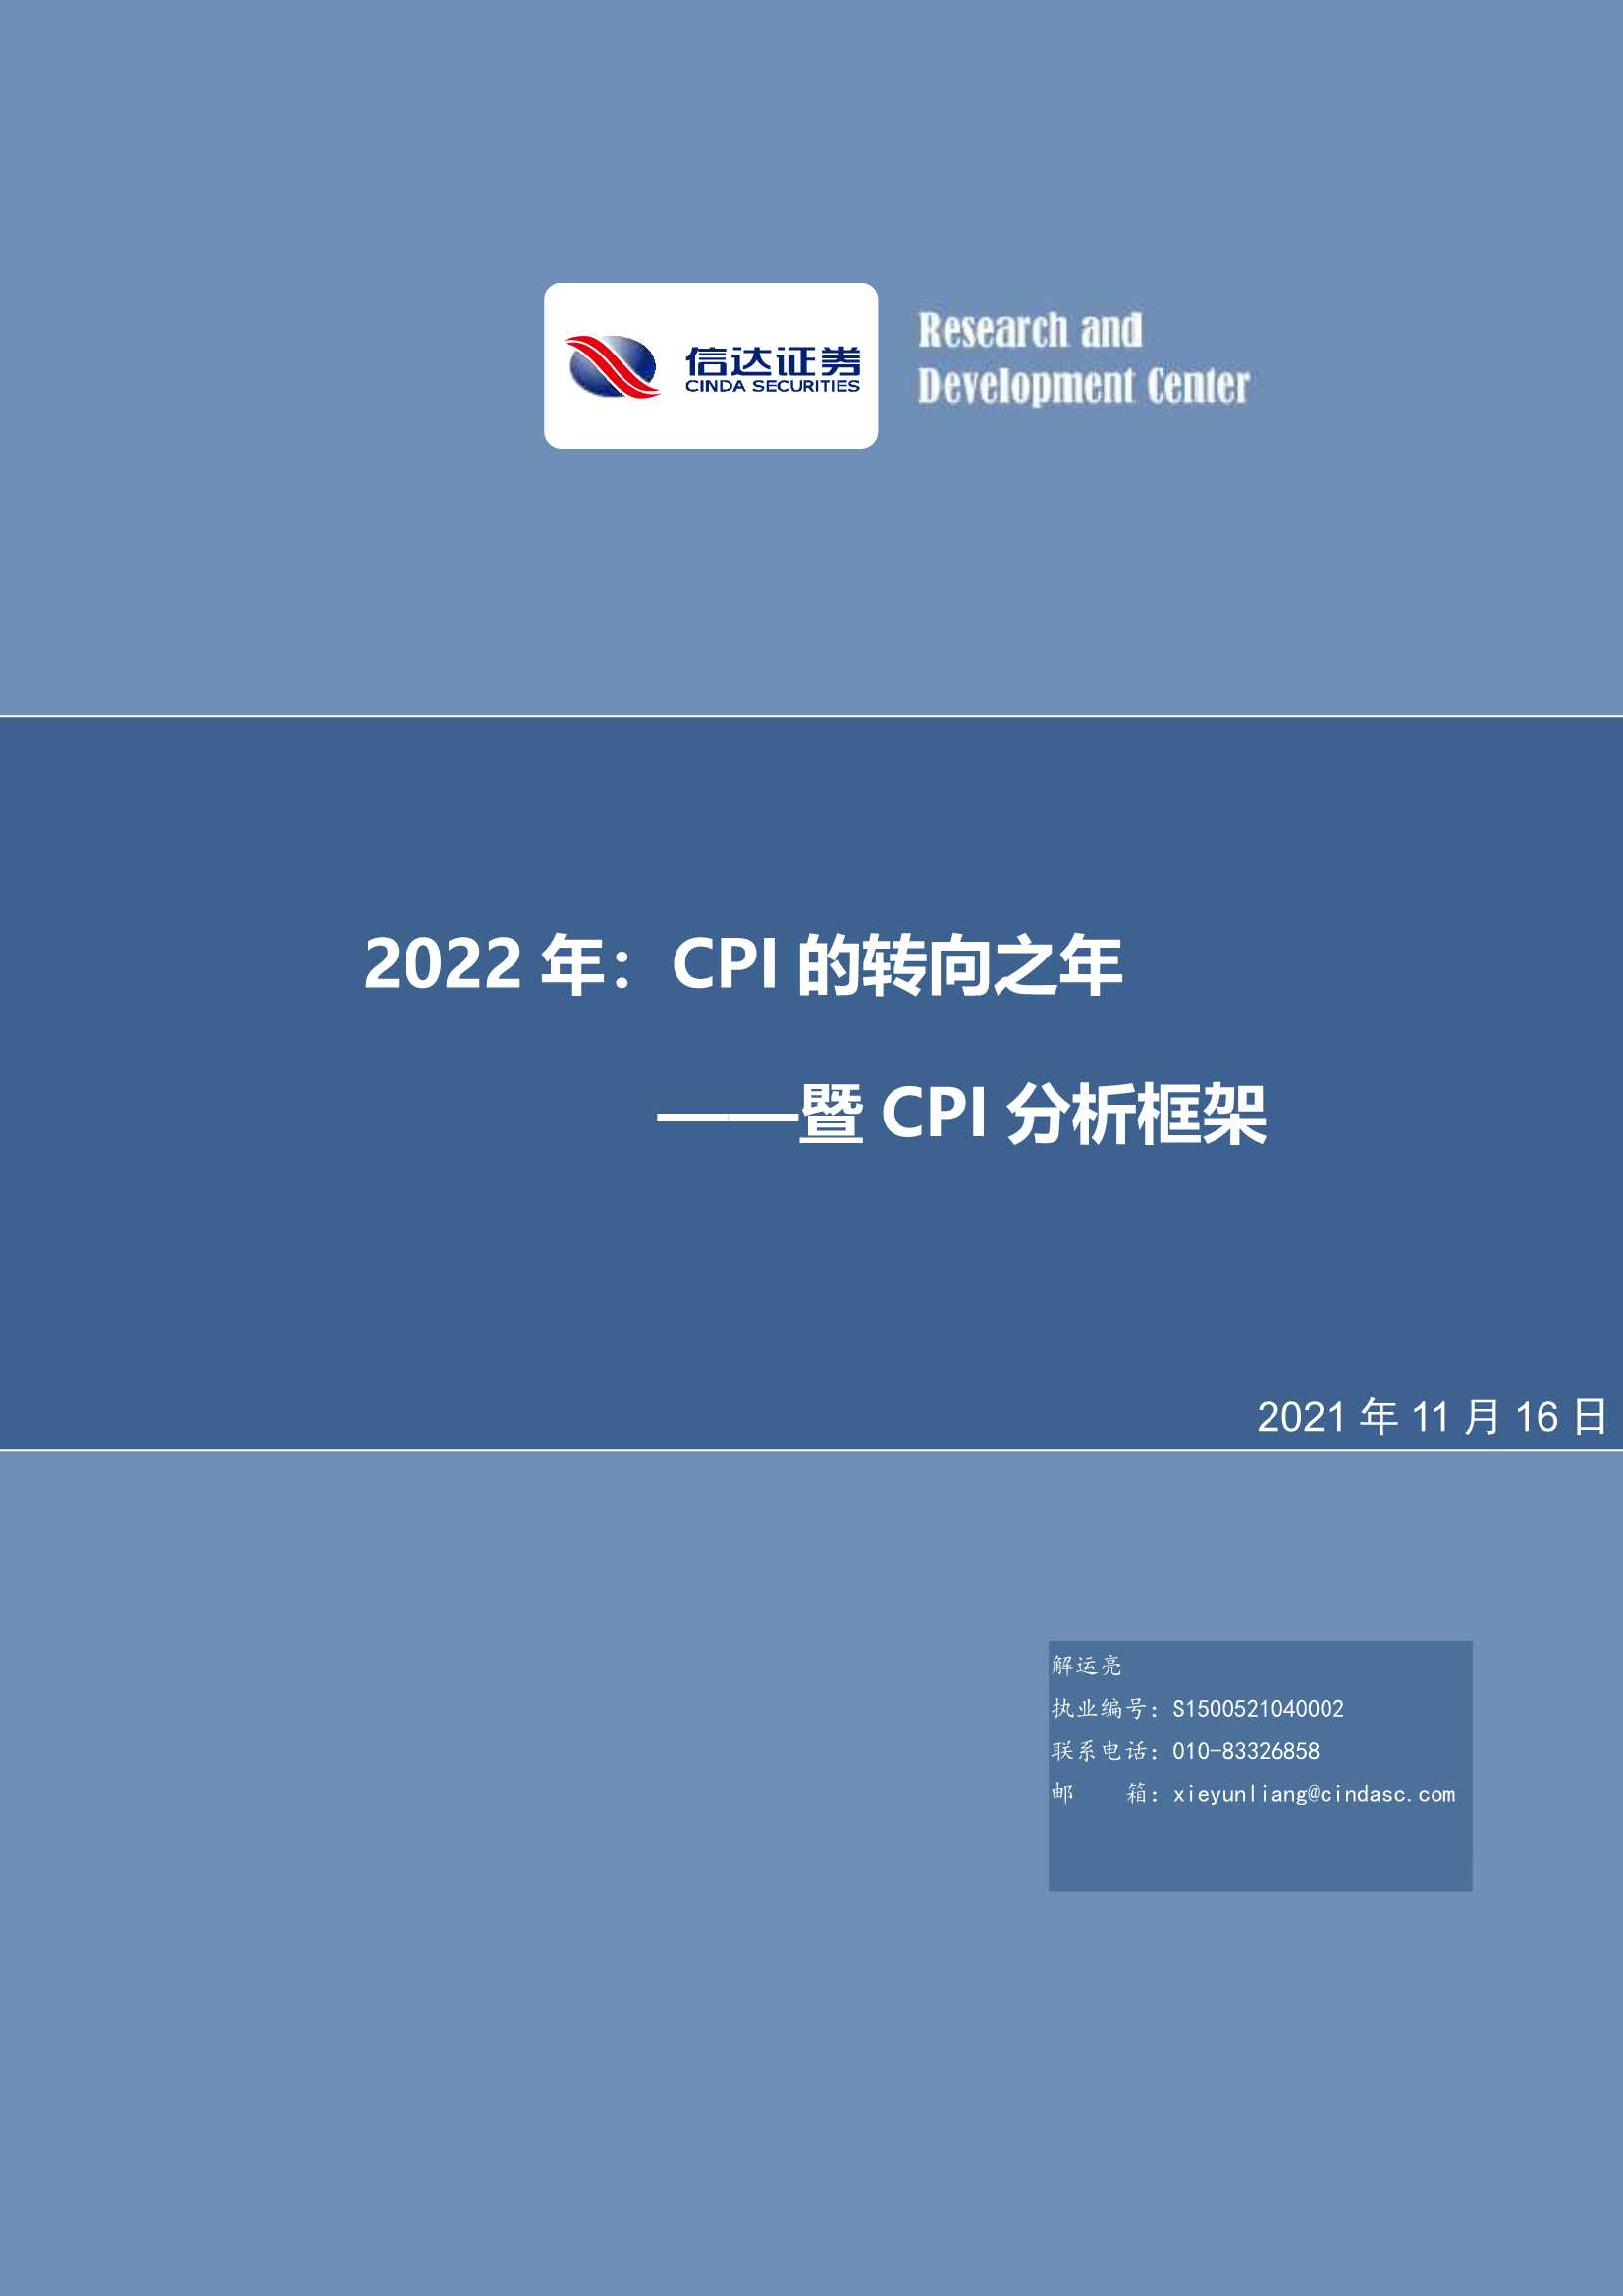 信达证券-暨CPI分析框架：2022年，CPI的转向之年-20211116-26页